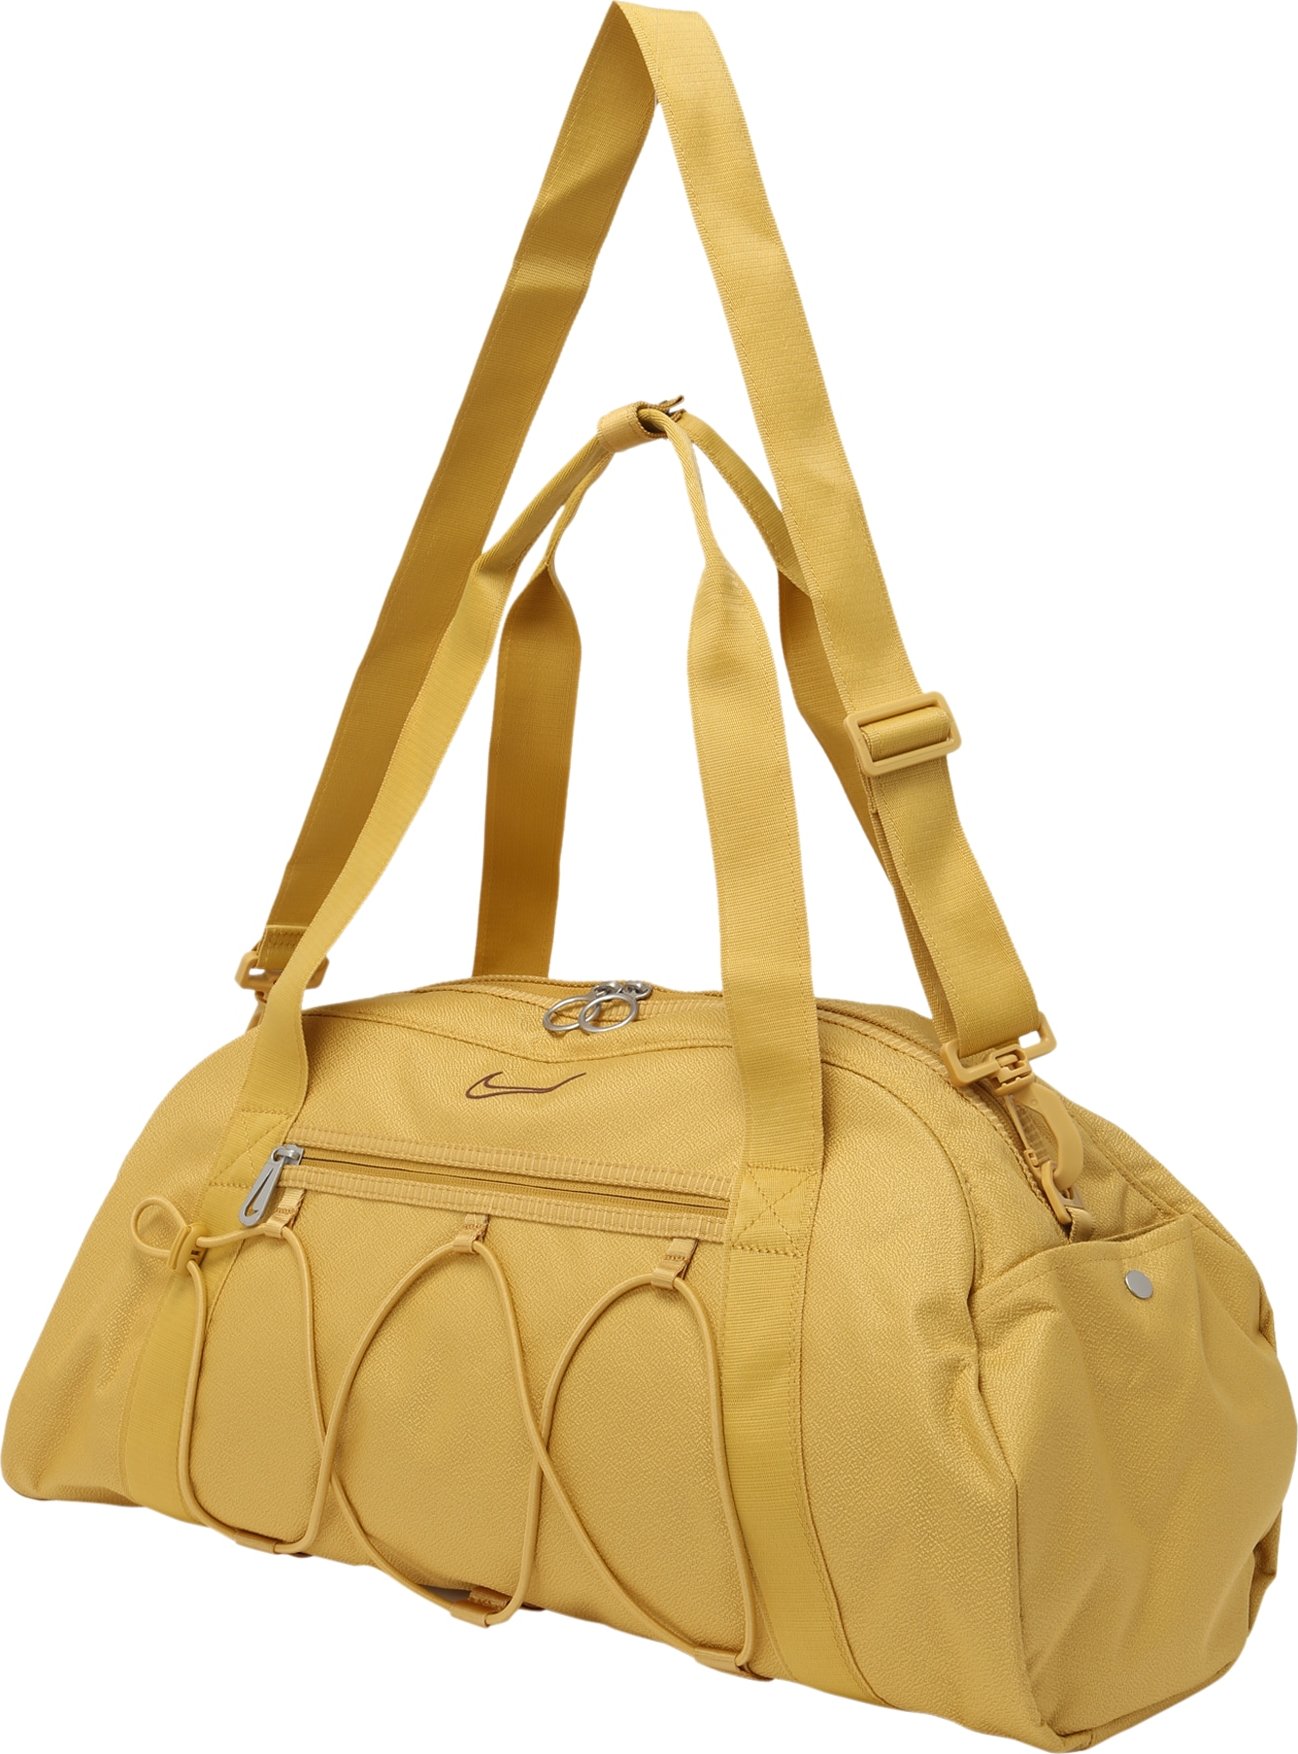 NIKE Sportovní taška zlatě žlutá / bordó